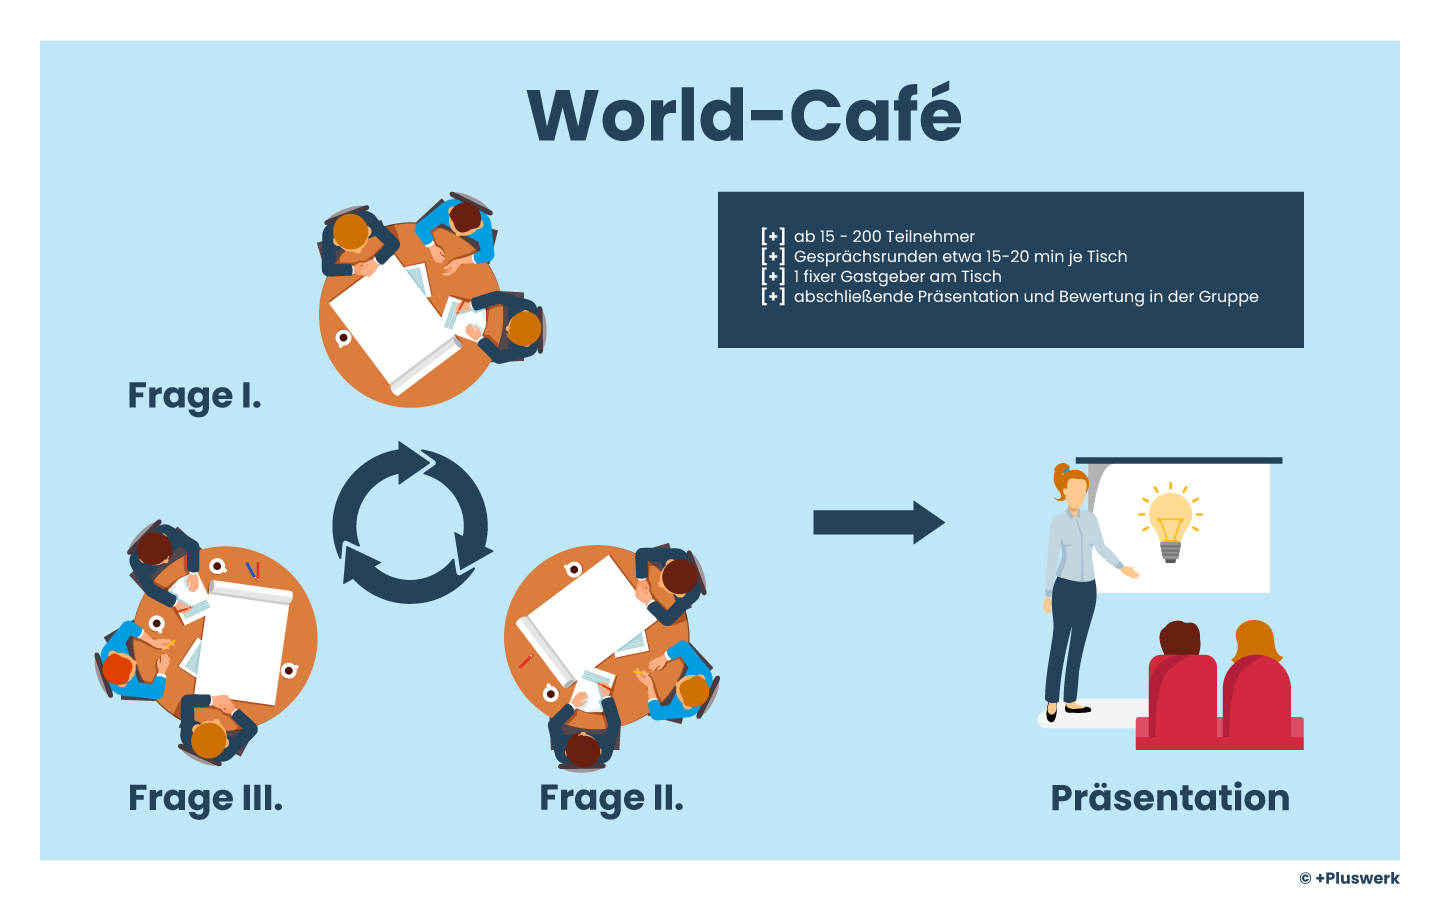 Darstellung der World-Café Methode